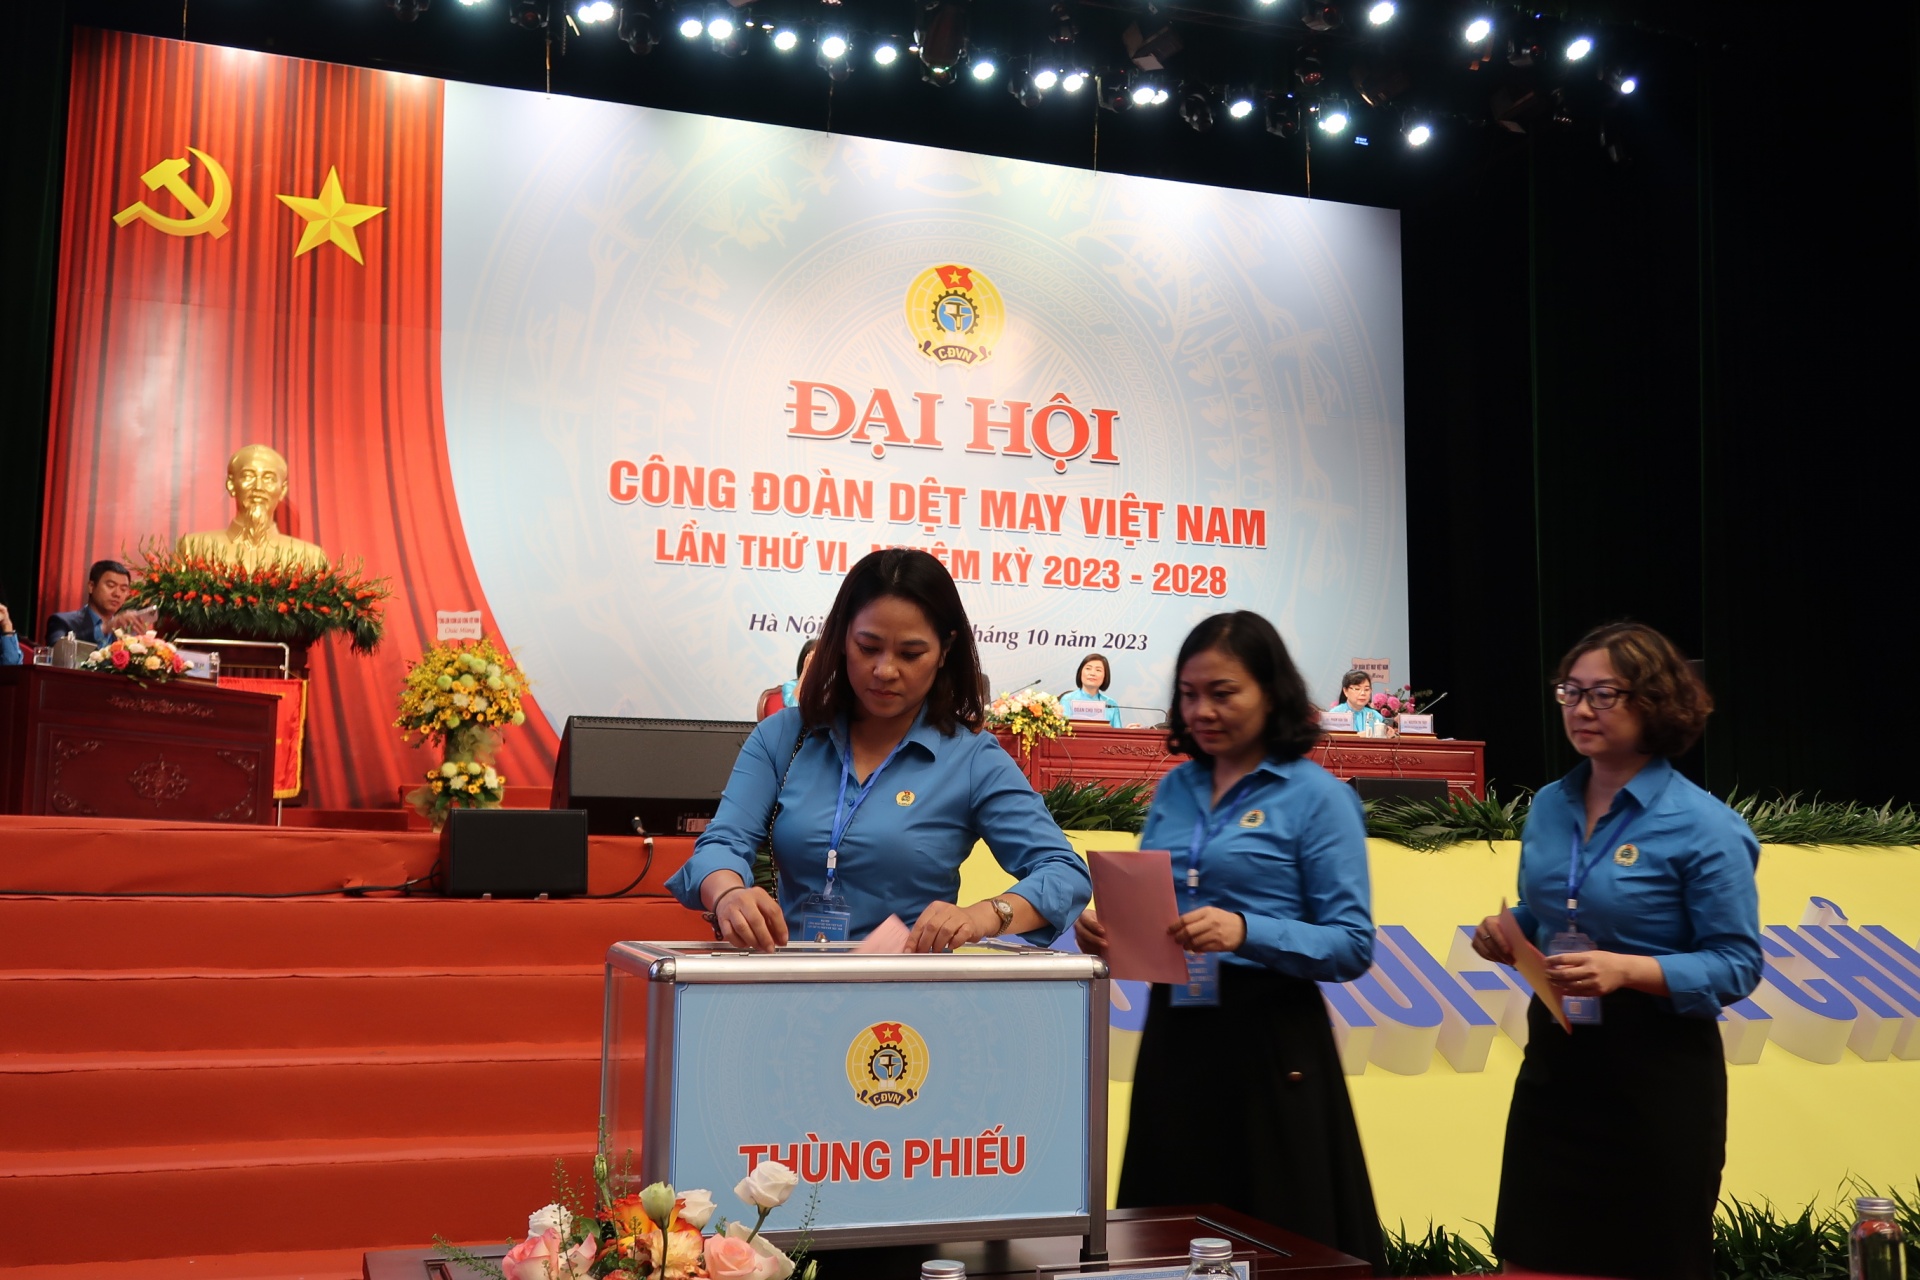 Đại hội Công đoàn Dệt May Việt Nam: Mục tiêu vì việc làm, đời sống người lao động